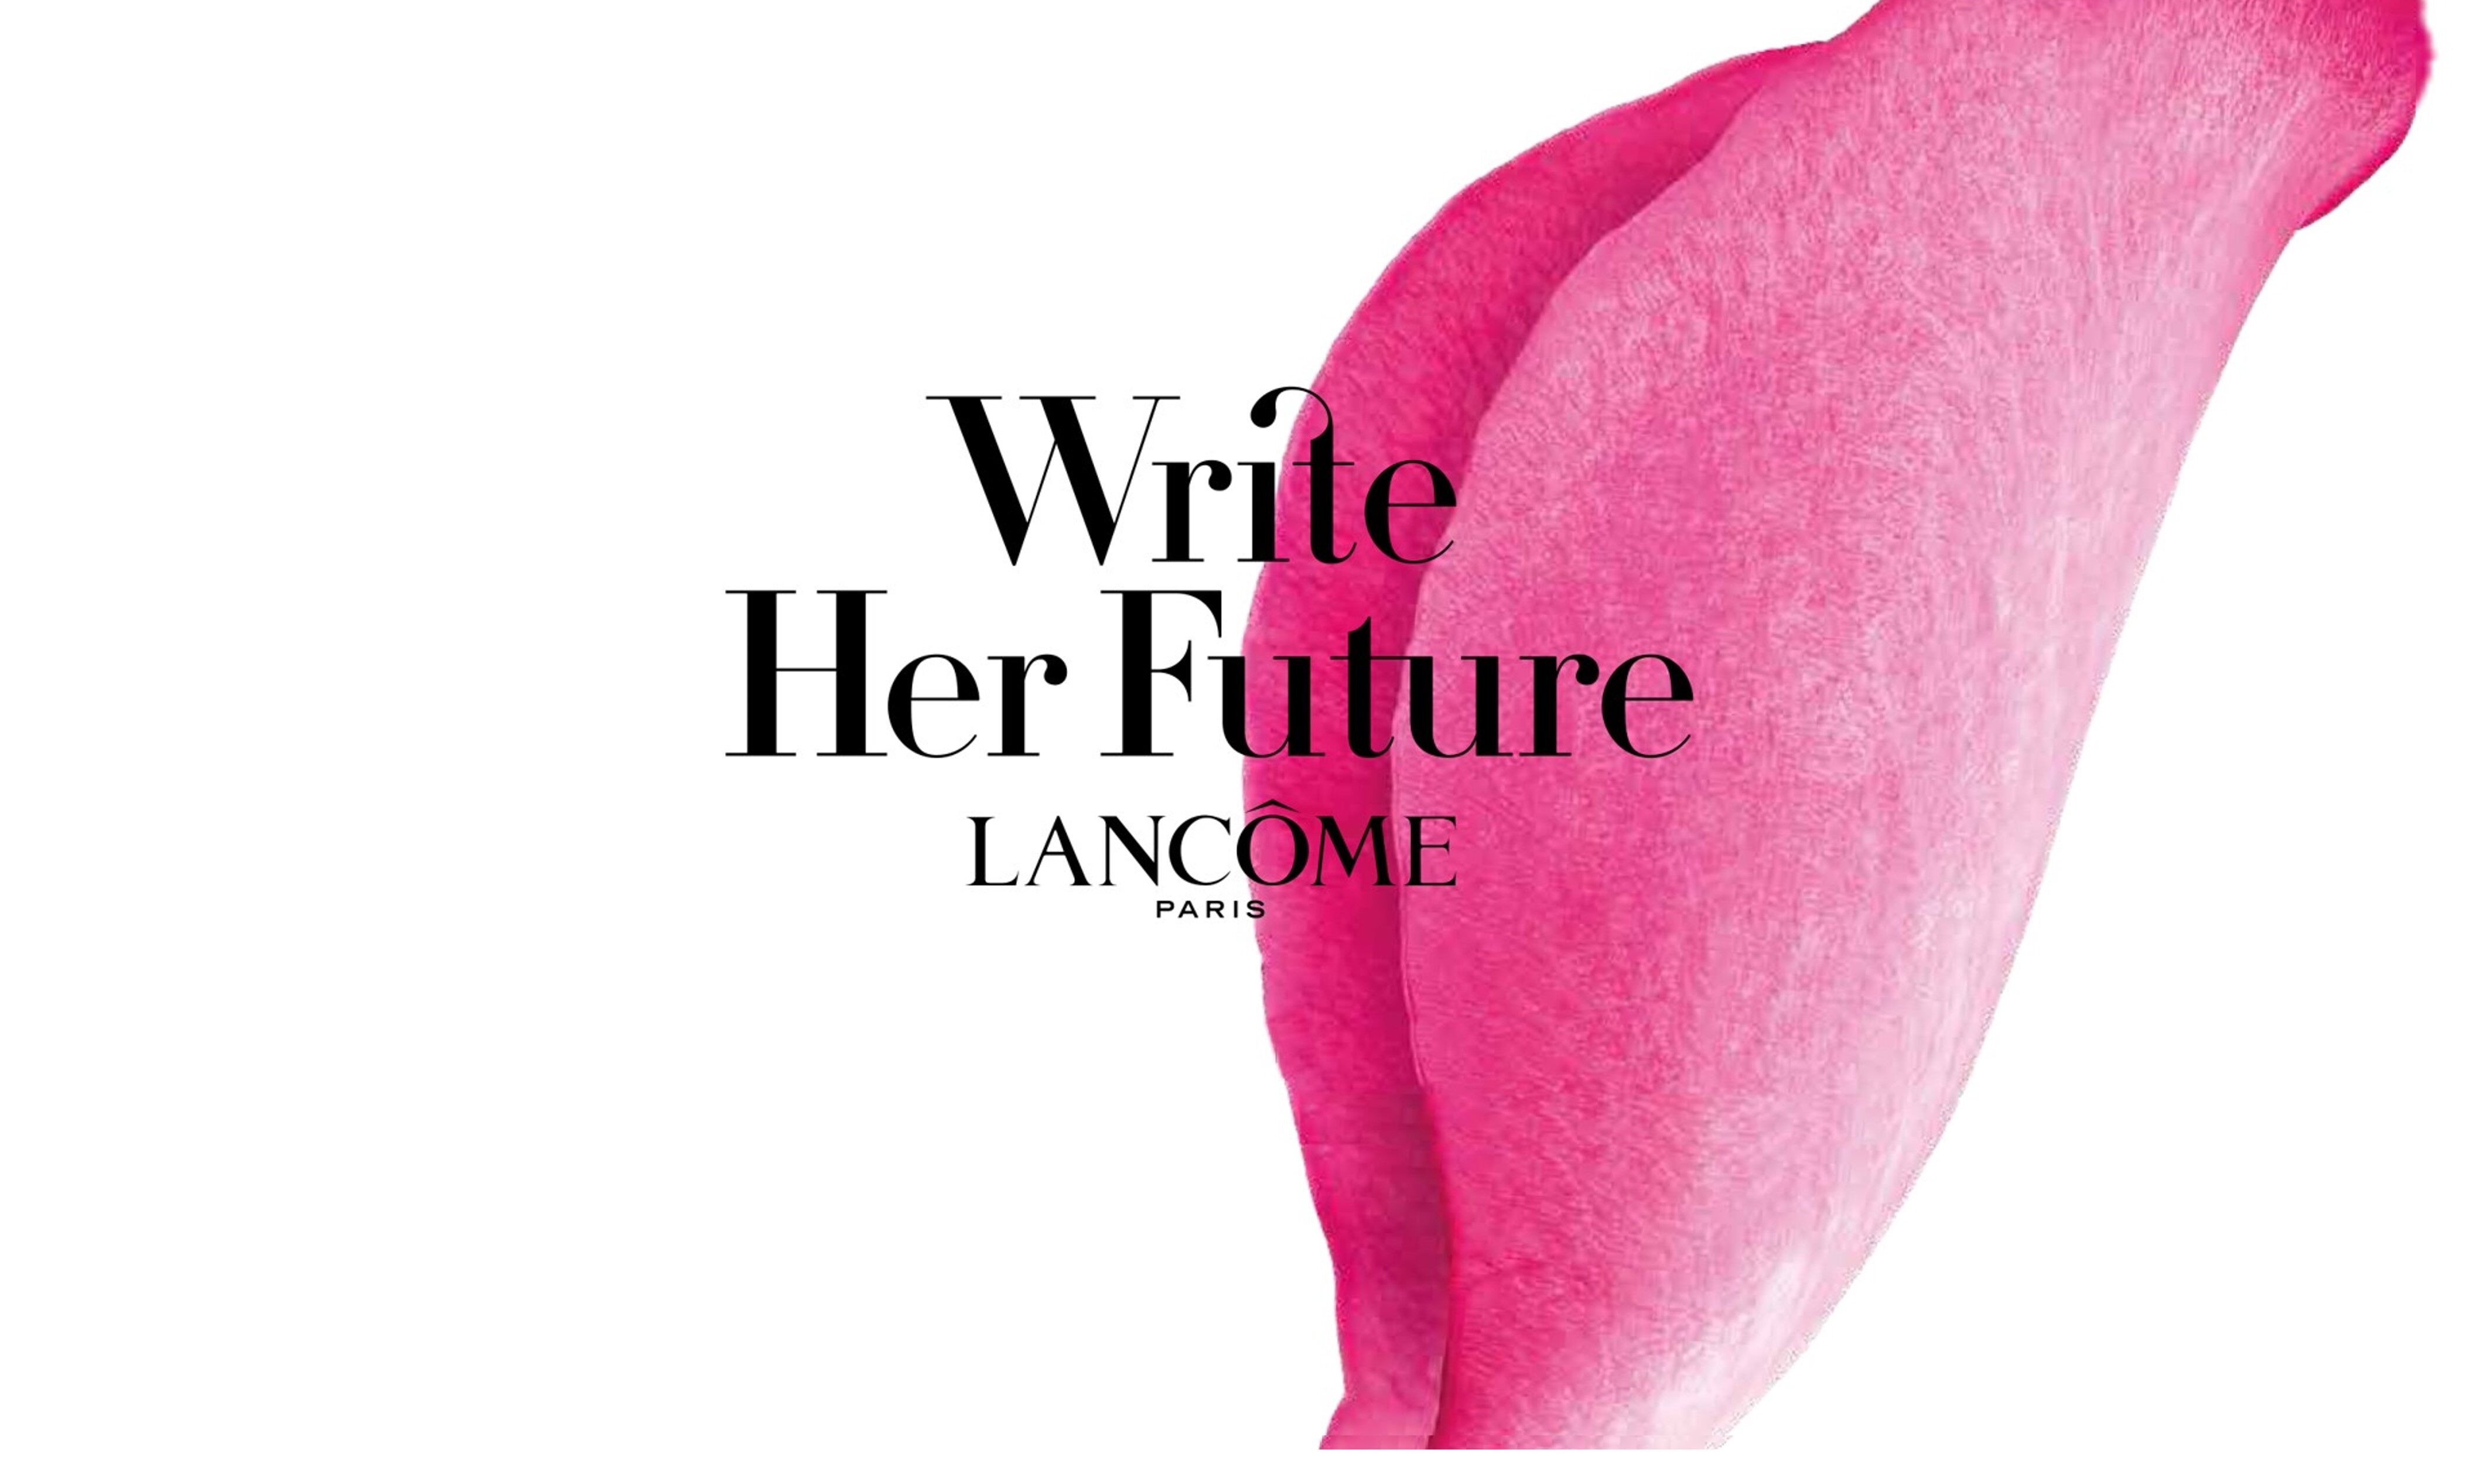 為正視現存的女性社會問題，自2017年起，Lancôme Write Her Future慈善計劃在世界各地展開關心社會活動